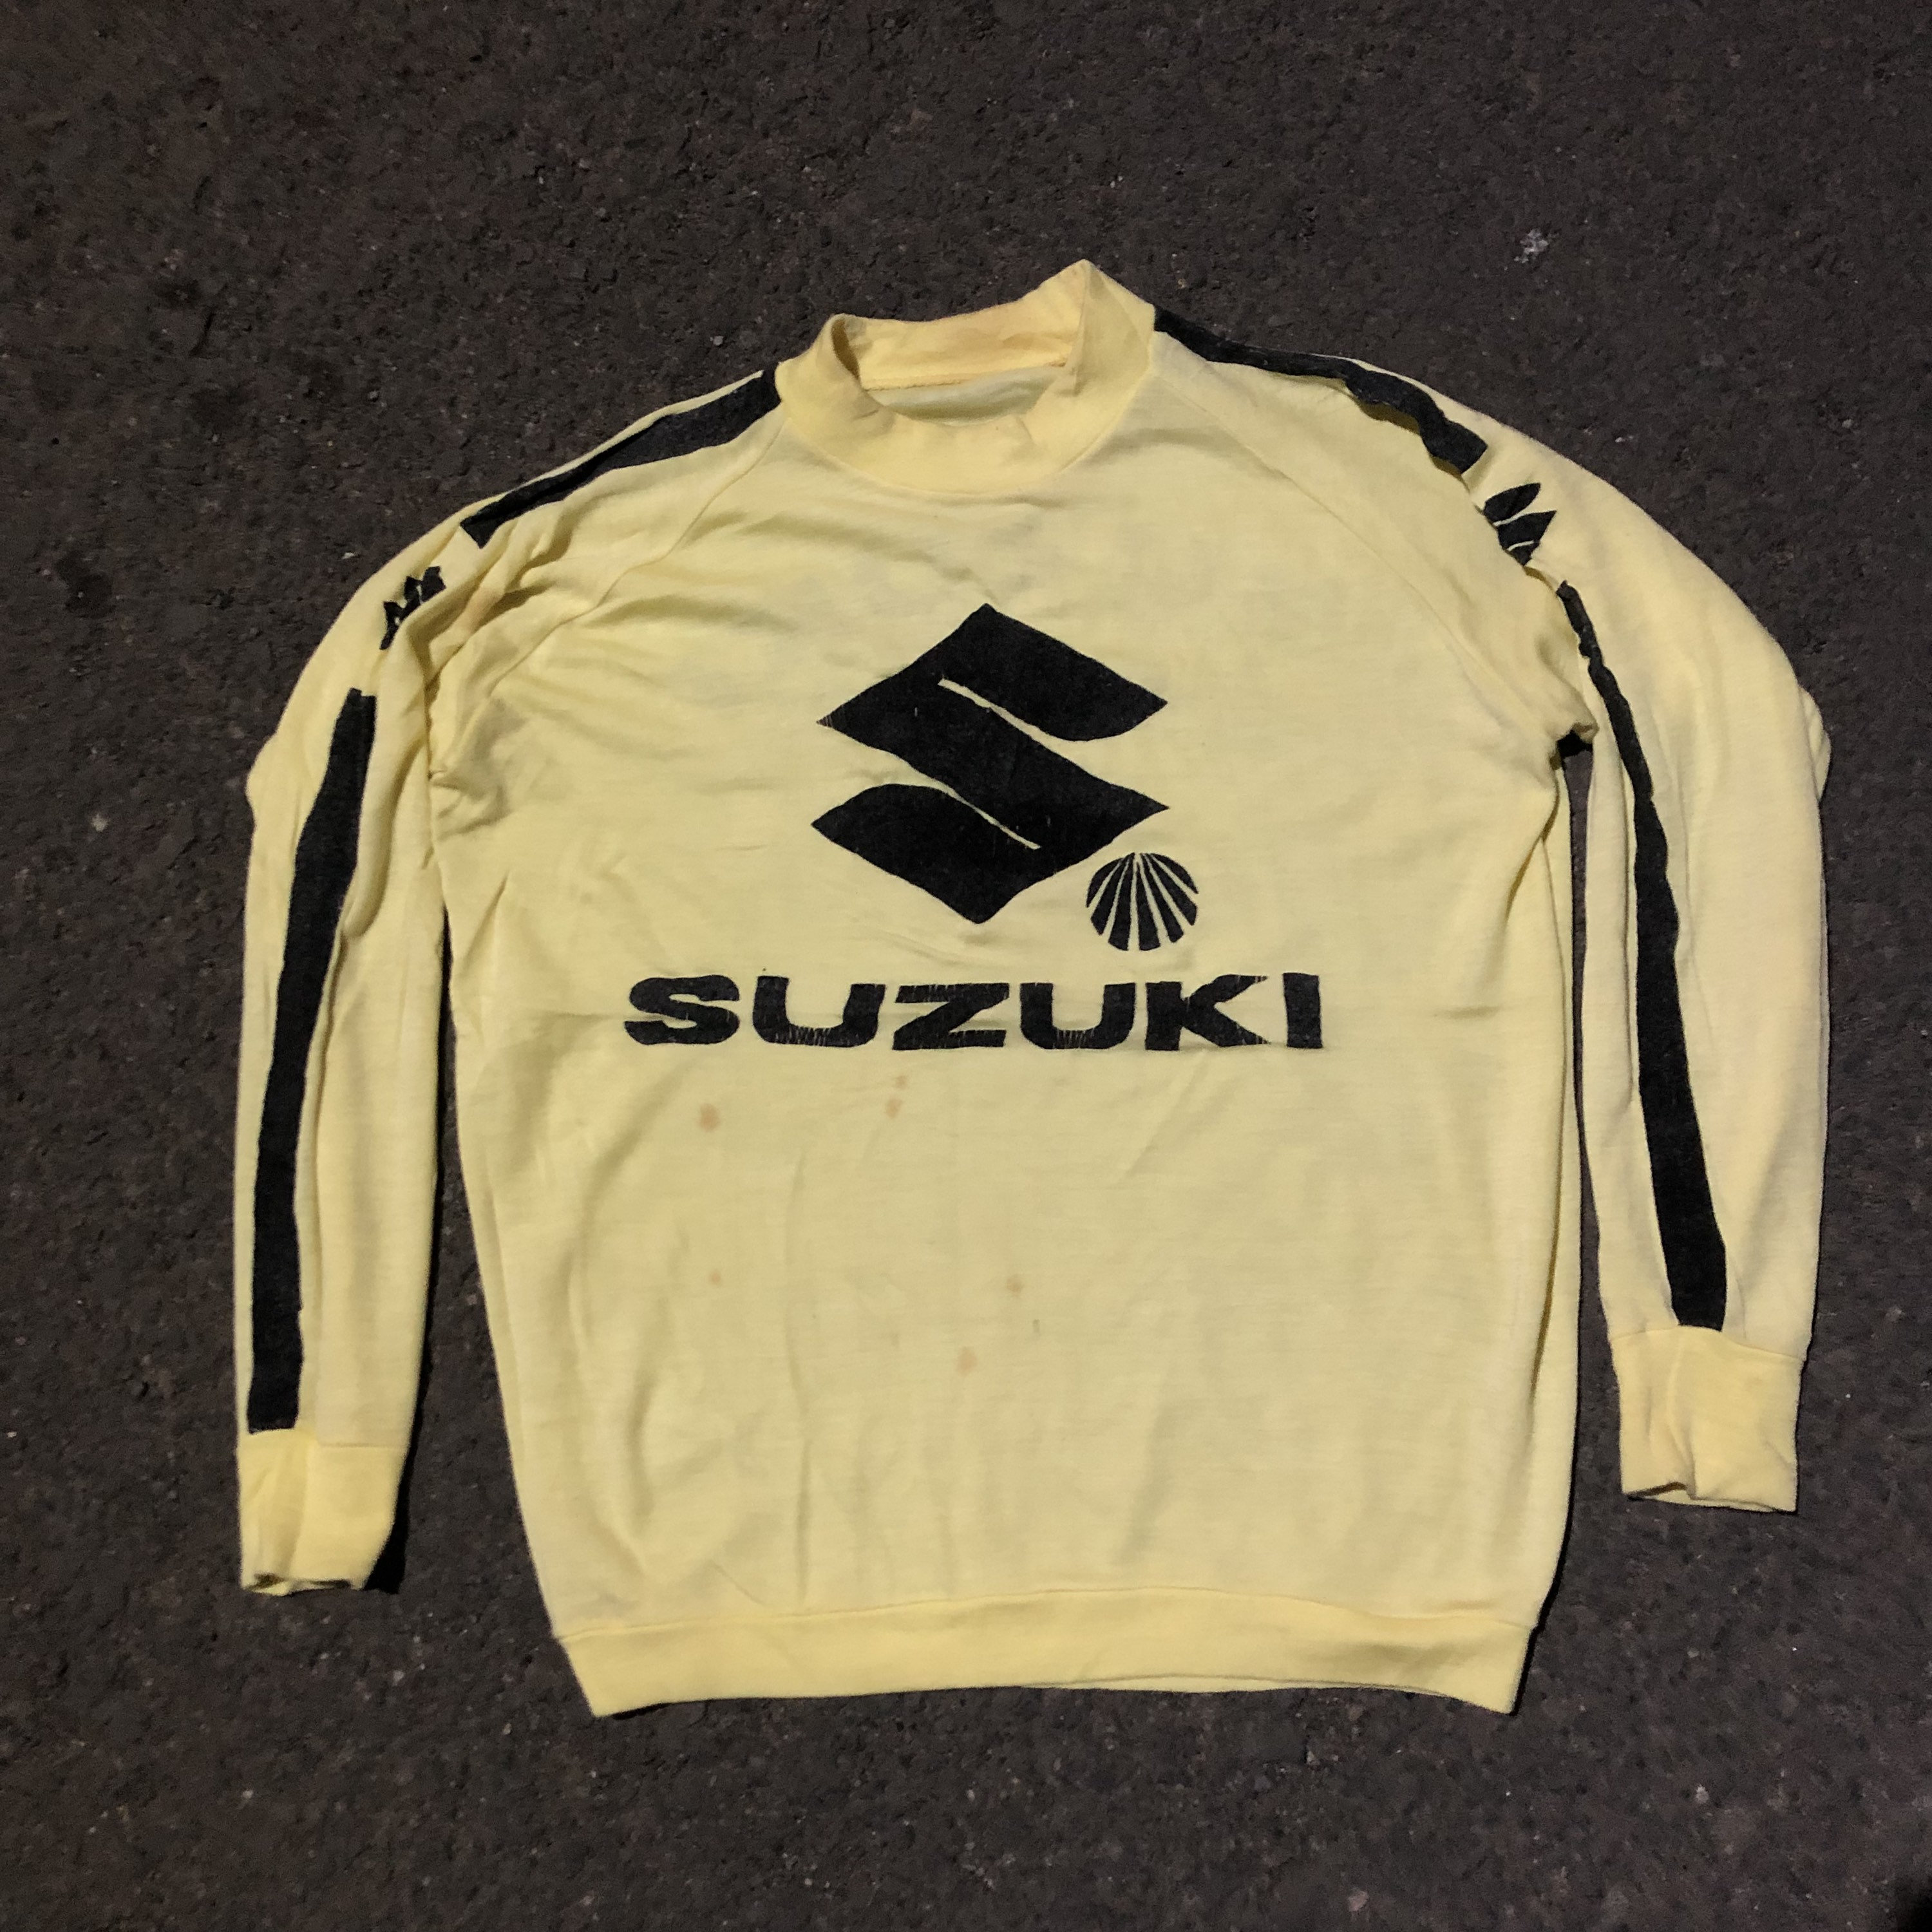 mixtervintage Vintage Suzuki Jersey 80s Rare